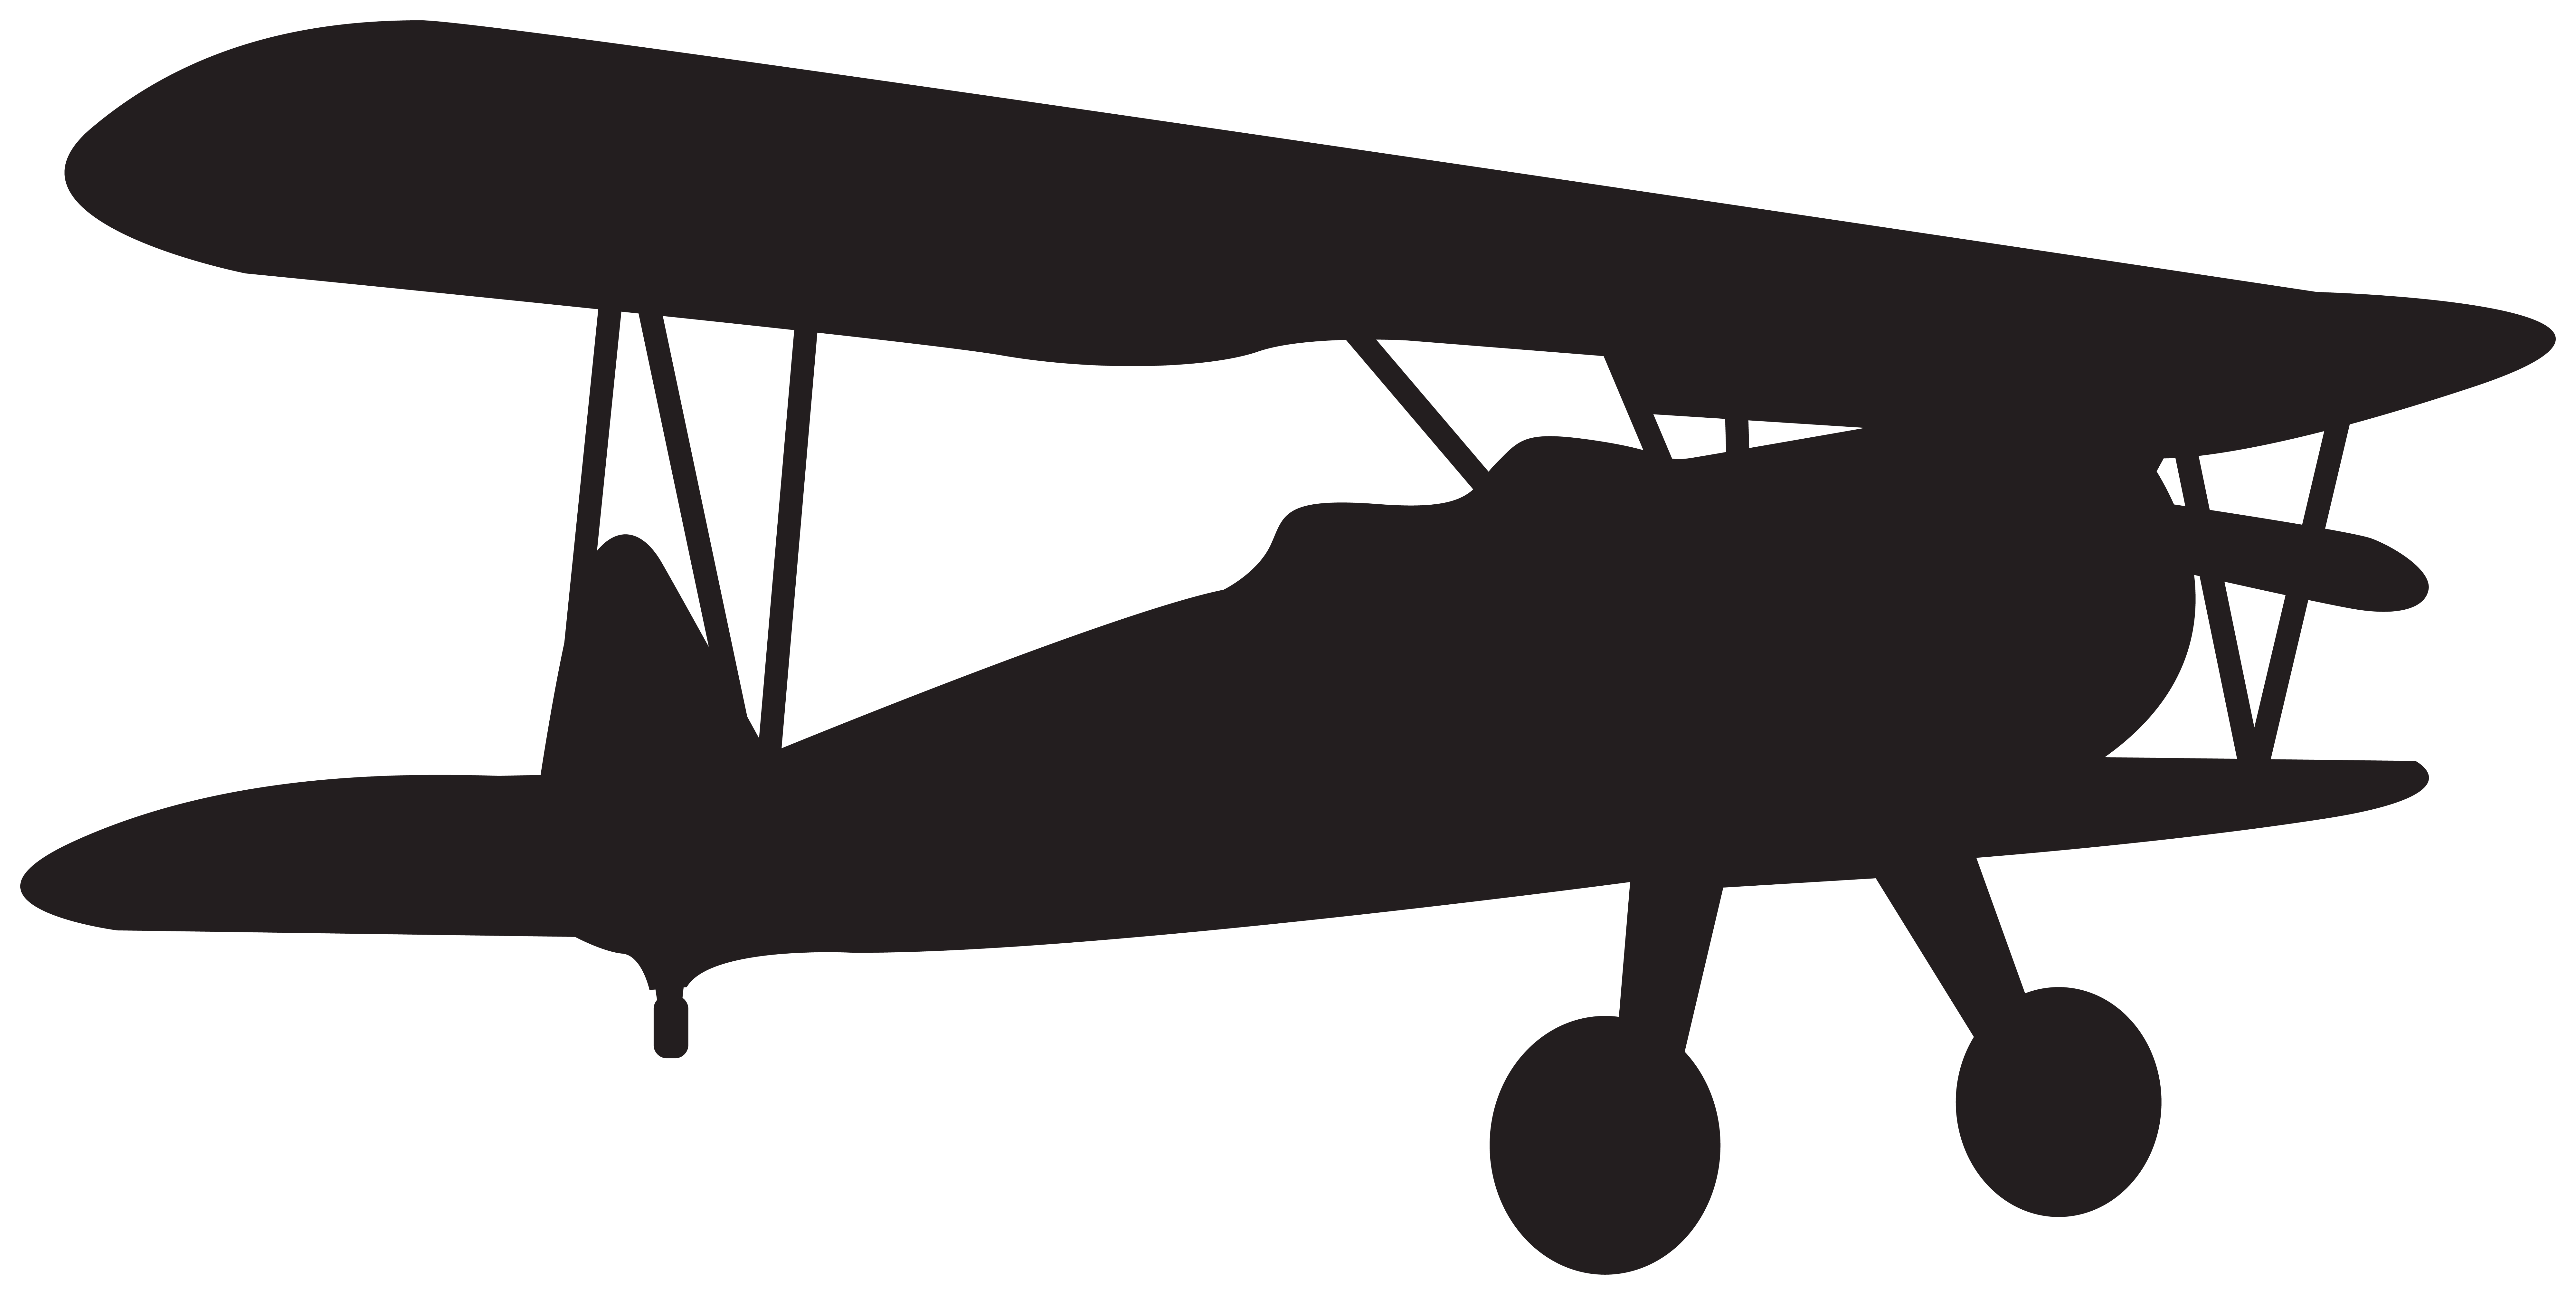 Small Plane Silhouette Clip Art Image.